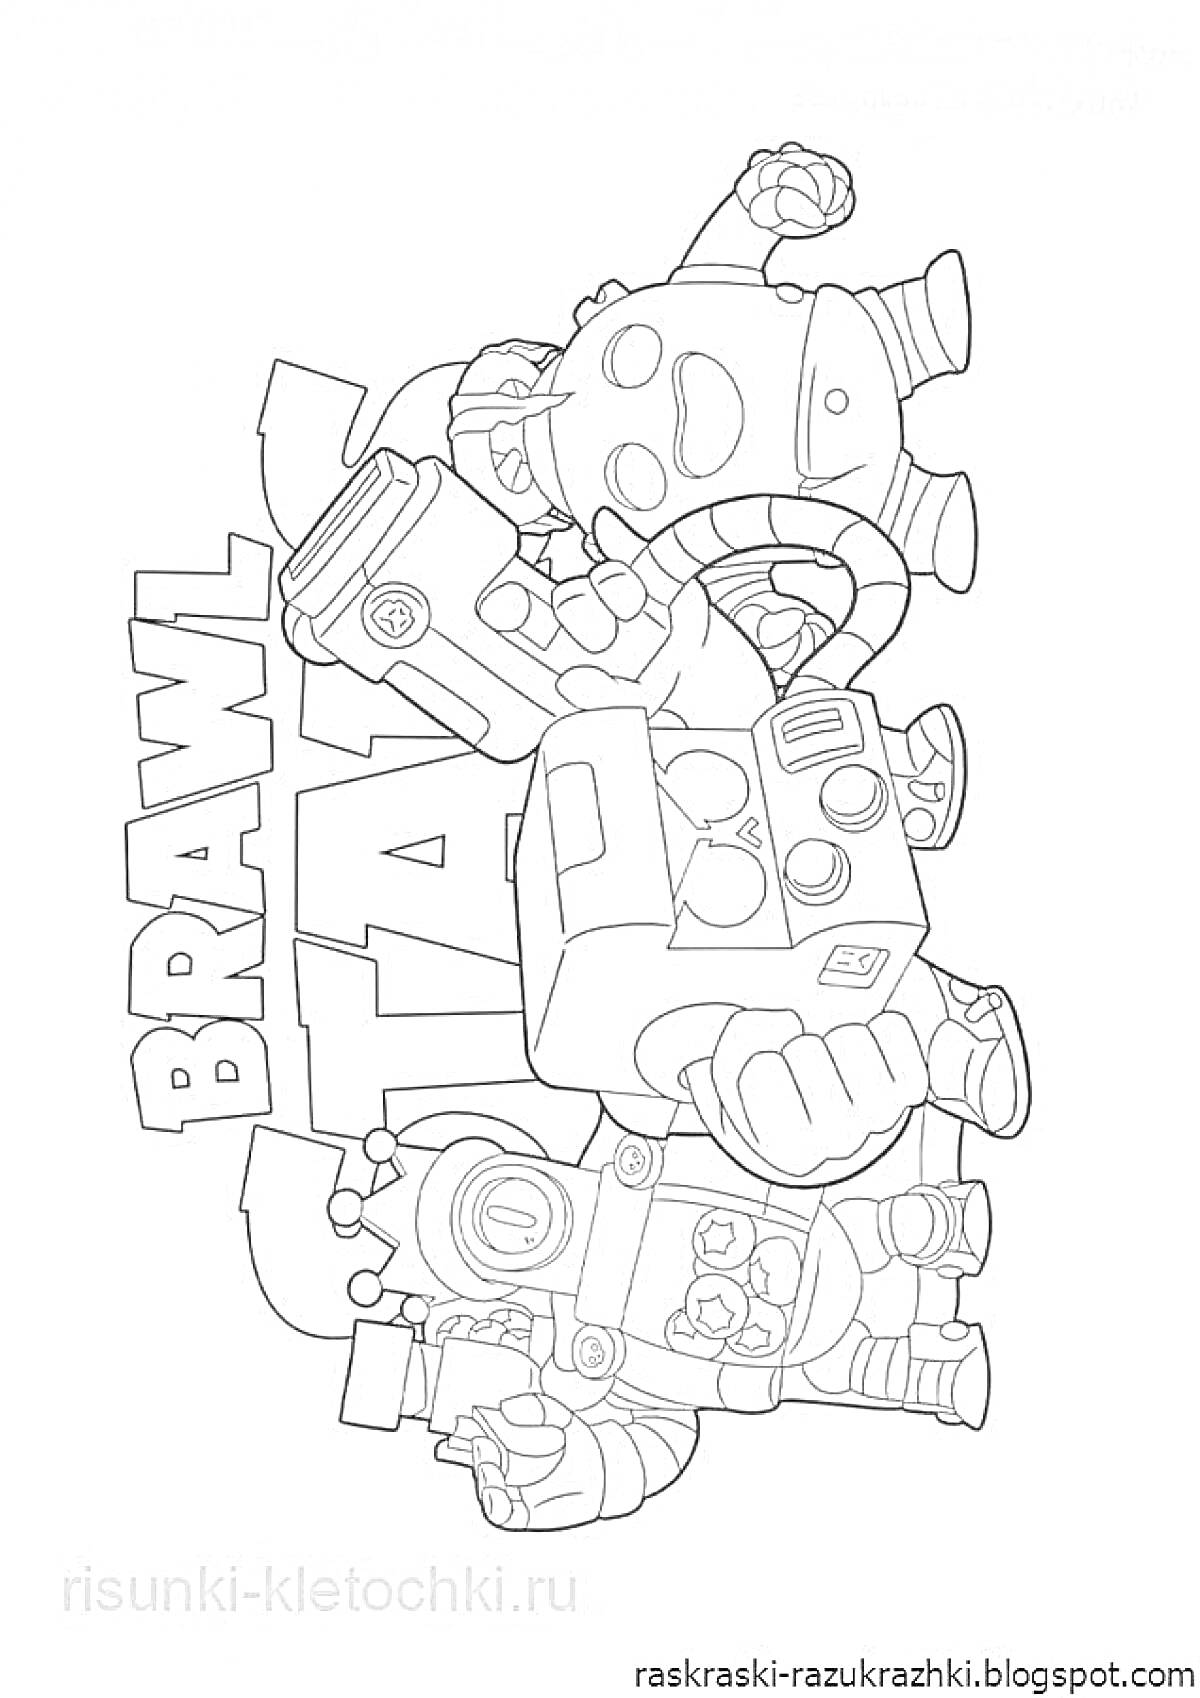 Раскраска Раскраска с персонажами из игры Brawl Stars с надписью 